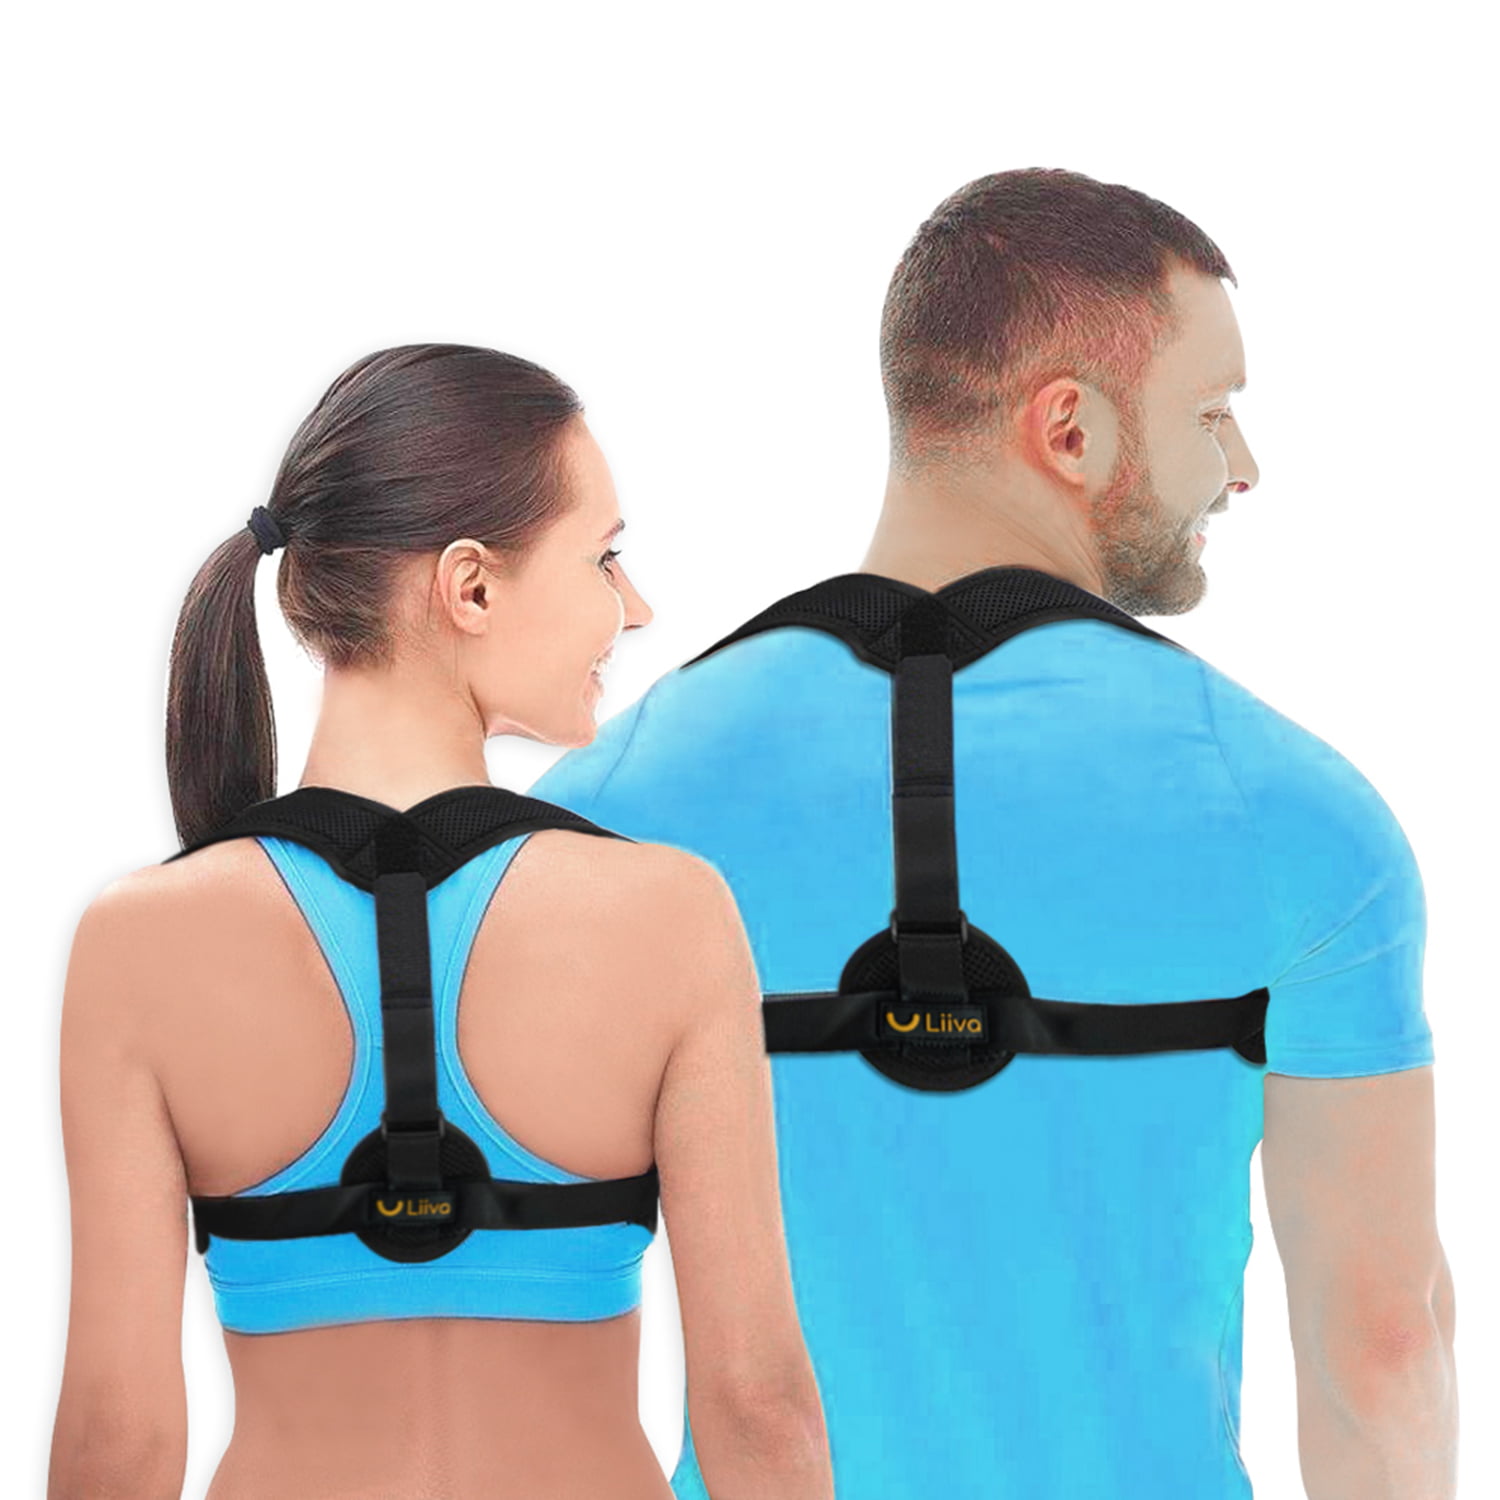 BOSS LV XXL Posture Corrector Brace Upper Back Correction Comfortable Breathable for Women Men Sport 